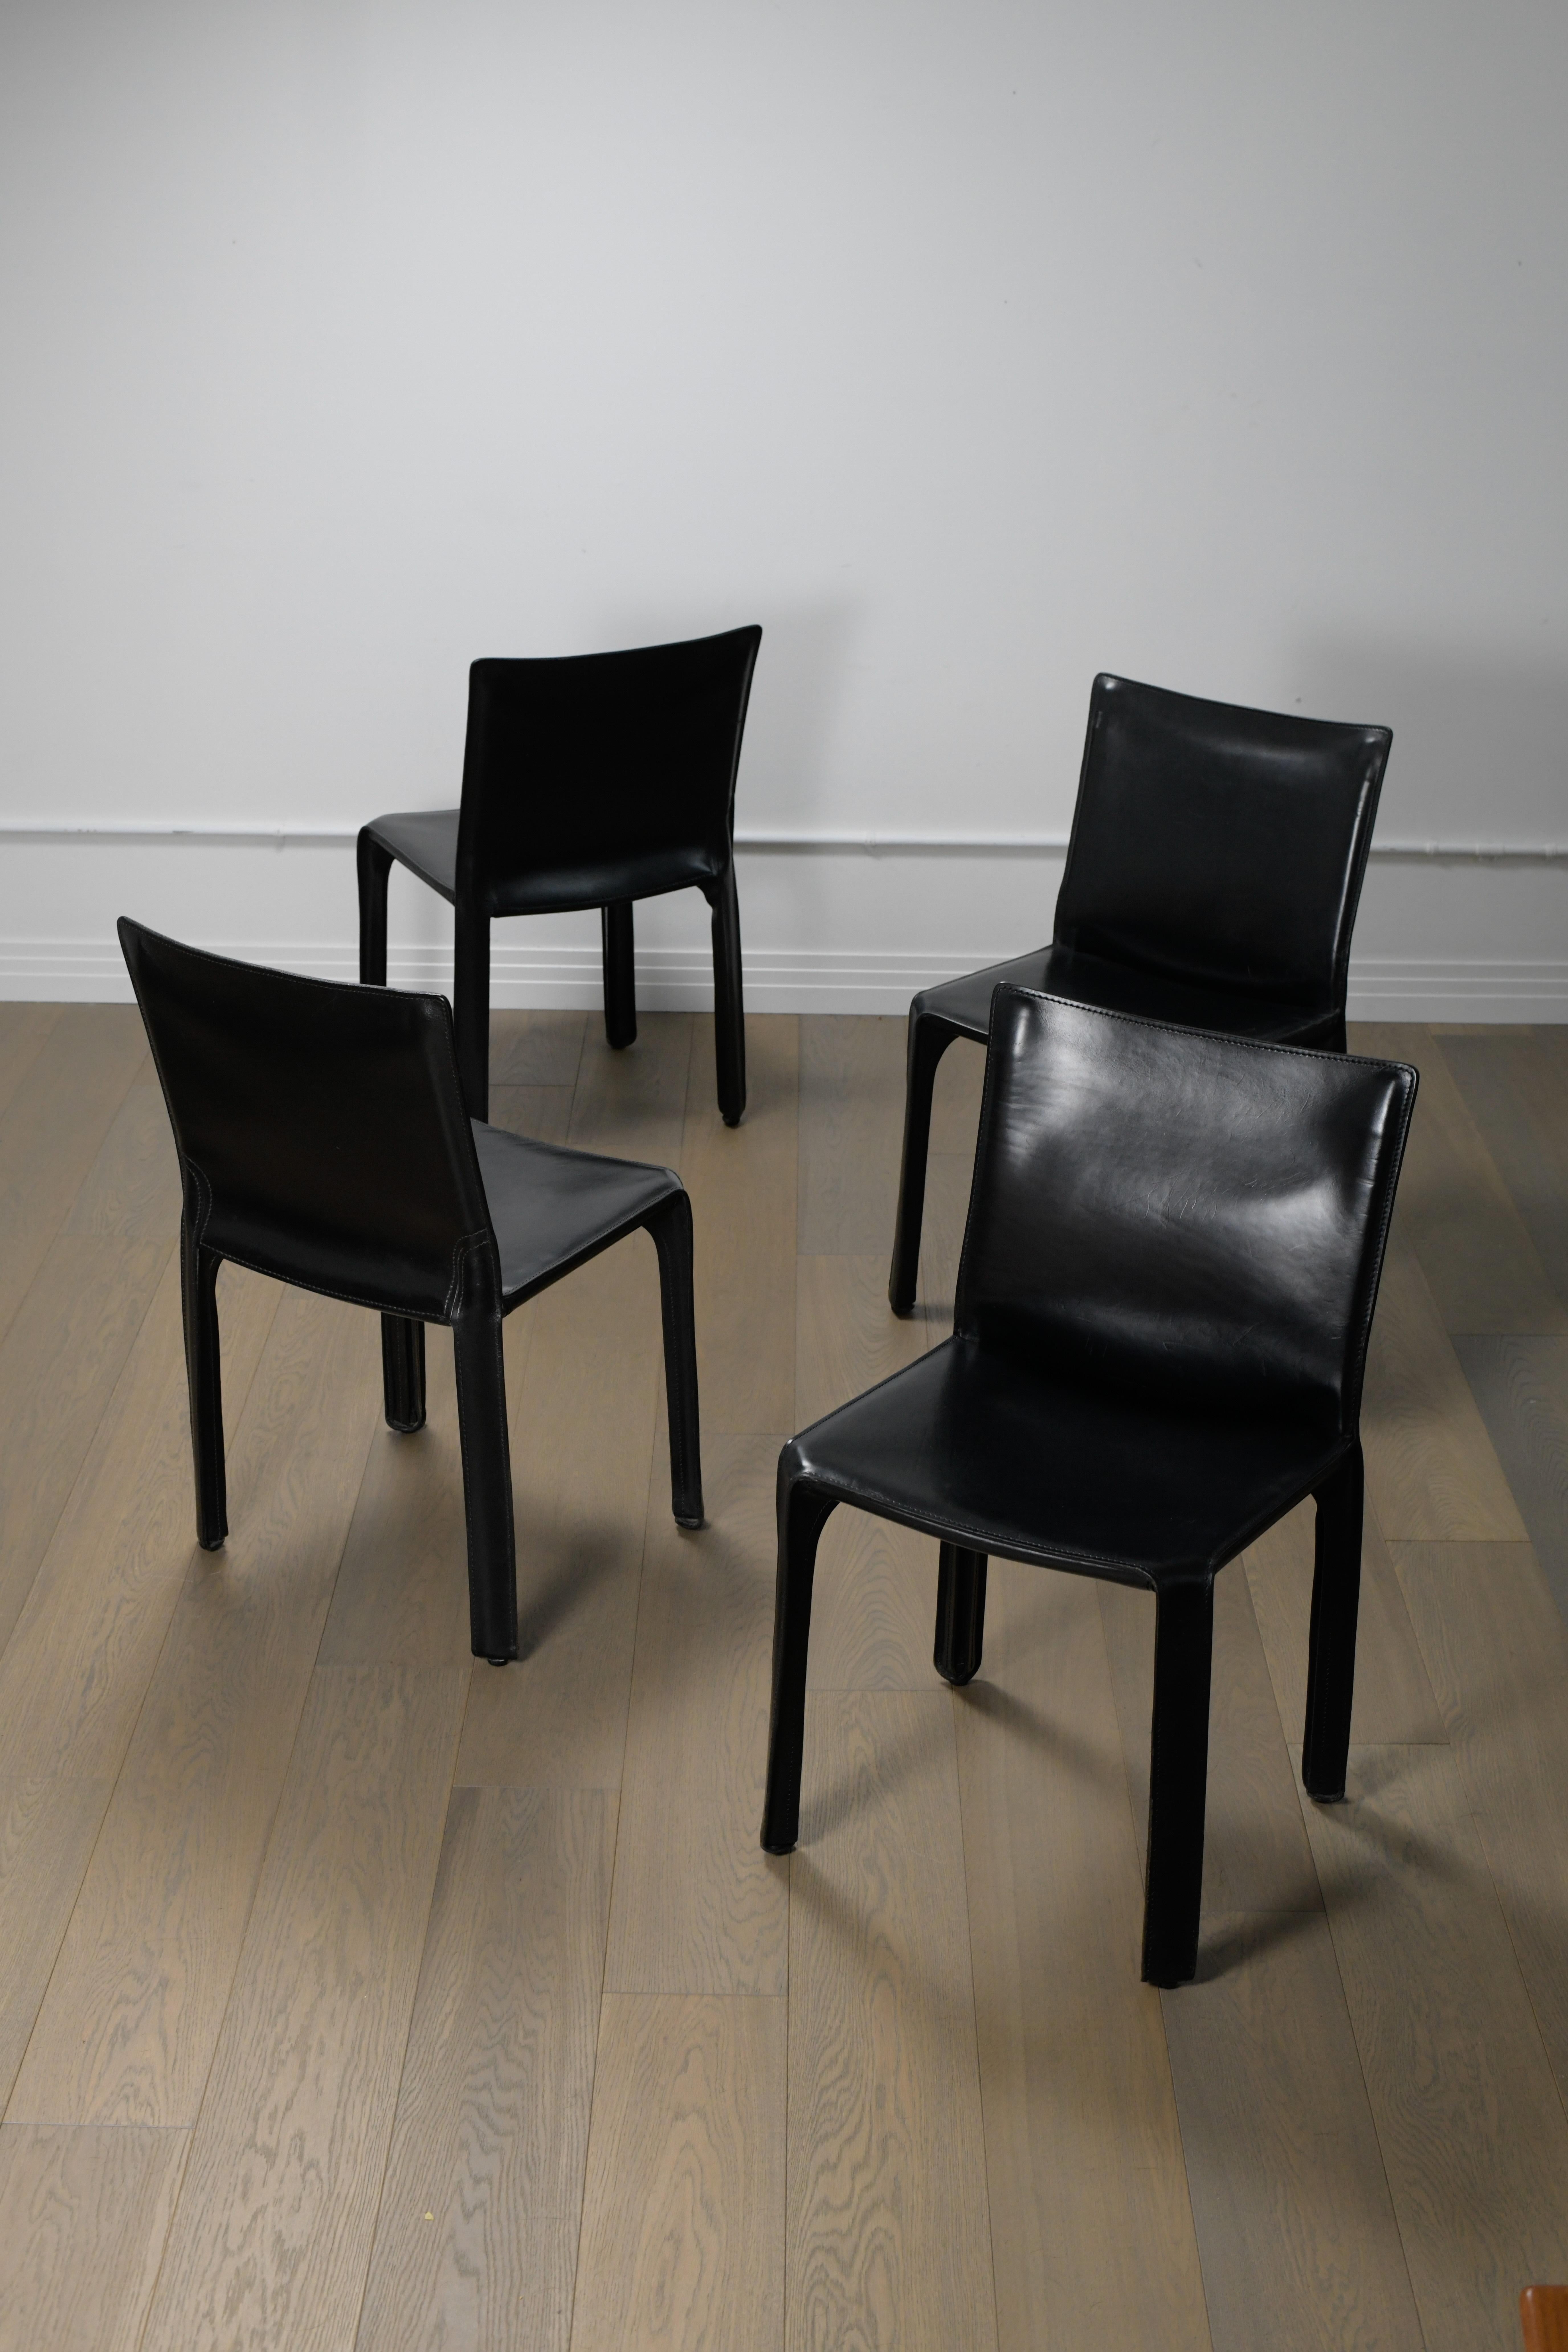 Vier Stühle Mario Bellini Cab aus den 1970er Jahren in schwarzem Leder von Cassina. Diese schönen Esszimmerstühle sind in gutem Vintage-Zustand mit einer schönen Patina, die ihrem Alter angemessen ist. Es gibt ein paar kleine Kratzer auf den Sitzen